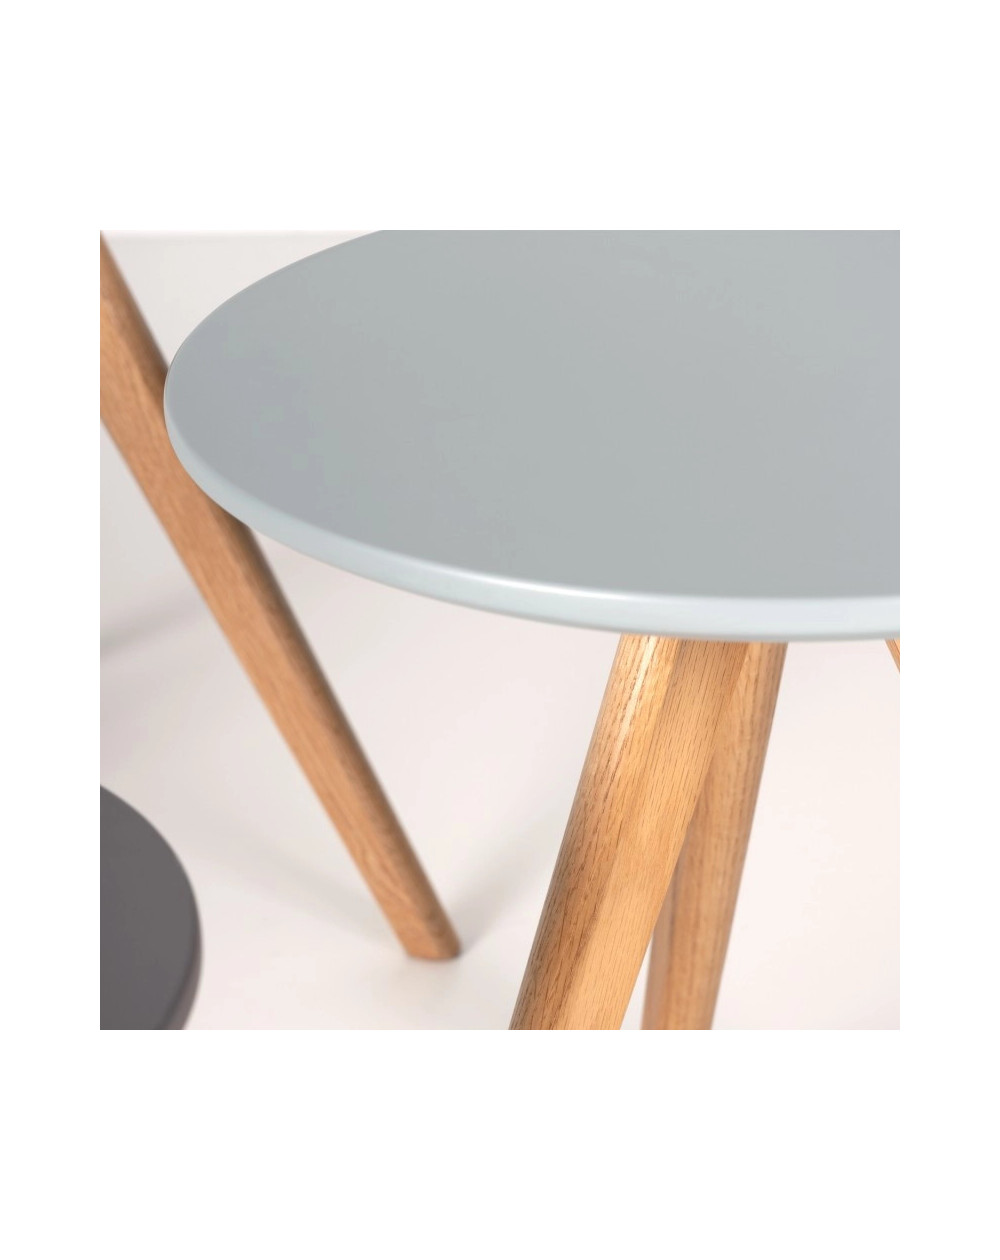 Cadeira Skagen Veludo DUDECO - Material do assento: Veludo
Material de estrutura: Madeira de faia
Altura total: 84 cm
Profundida